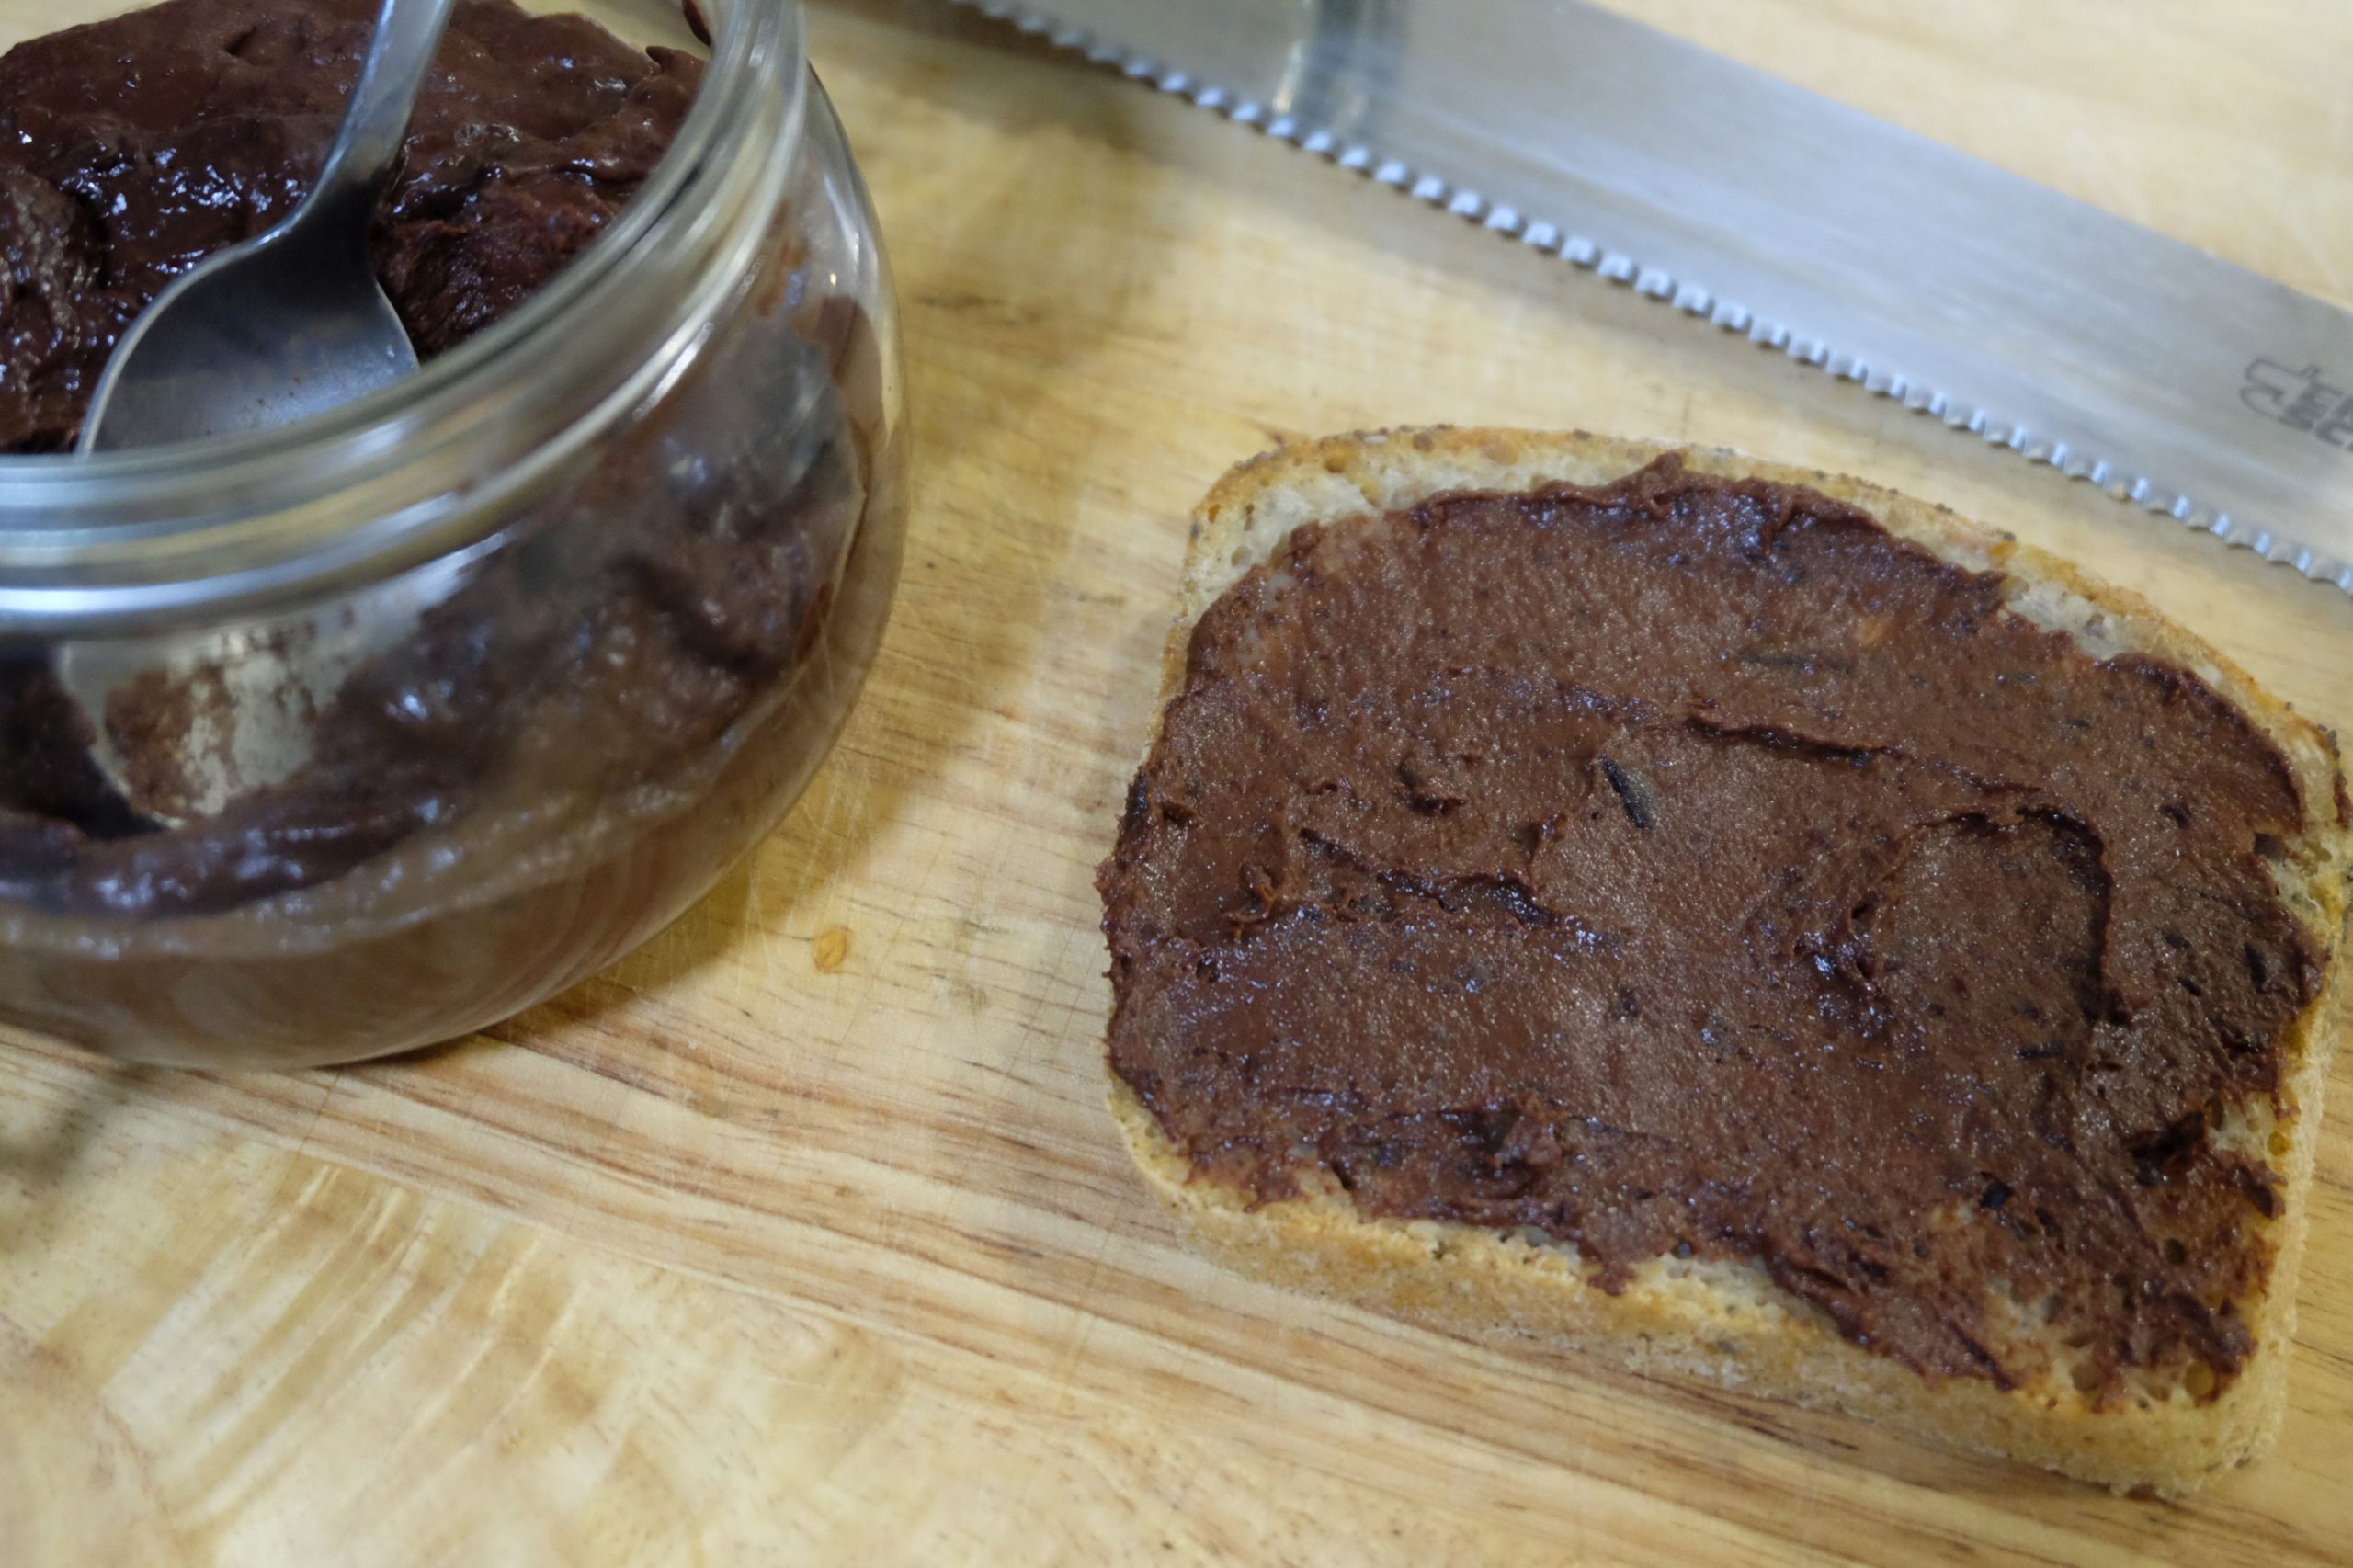 Plum & chocolate preserve. Marmolada śliwkowo-czekoladowa – Breadcentric